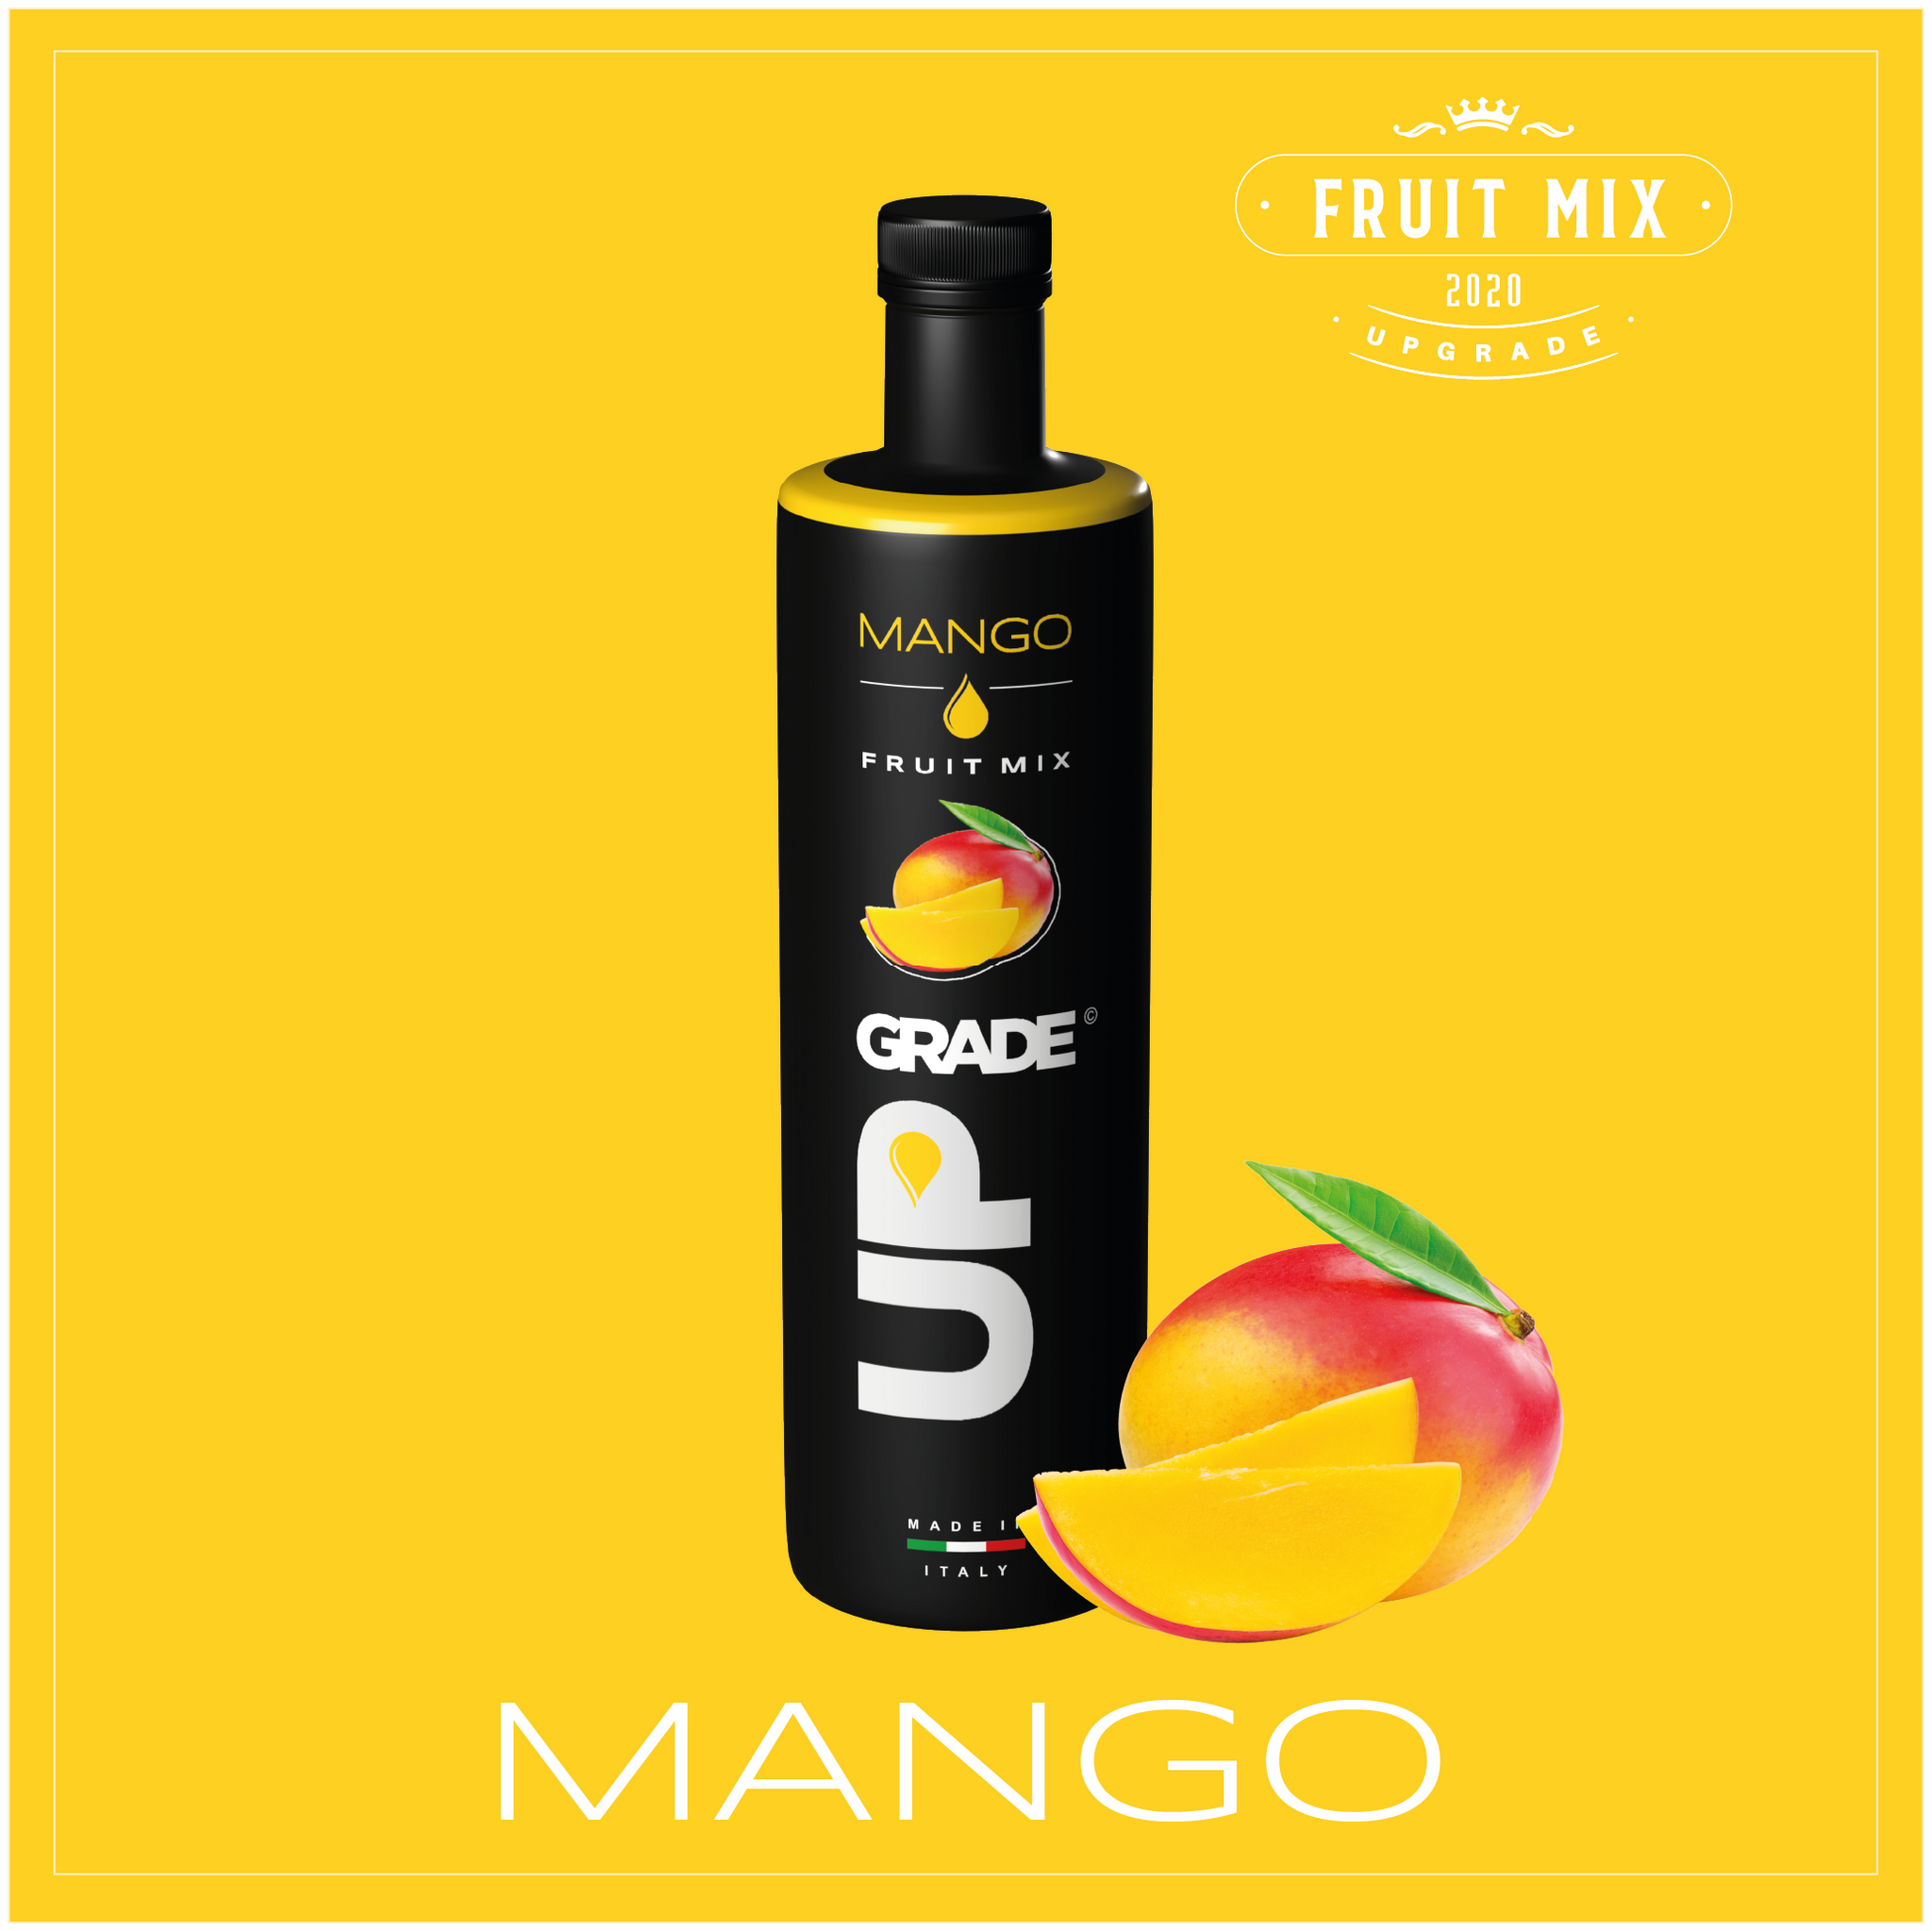 UPGRADE Fruit Mix - Mango